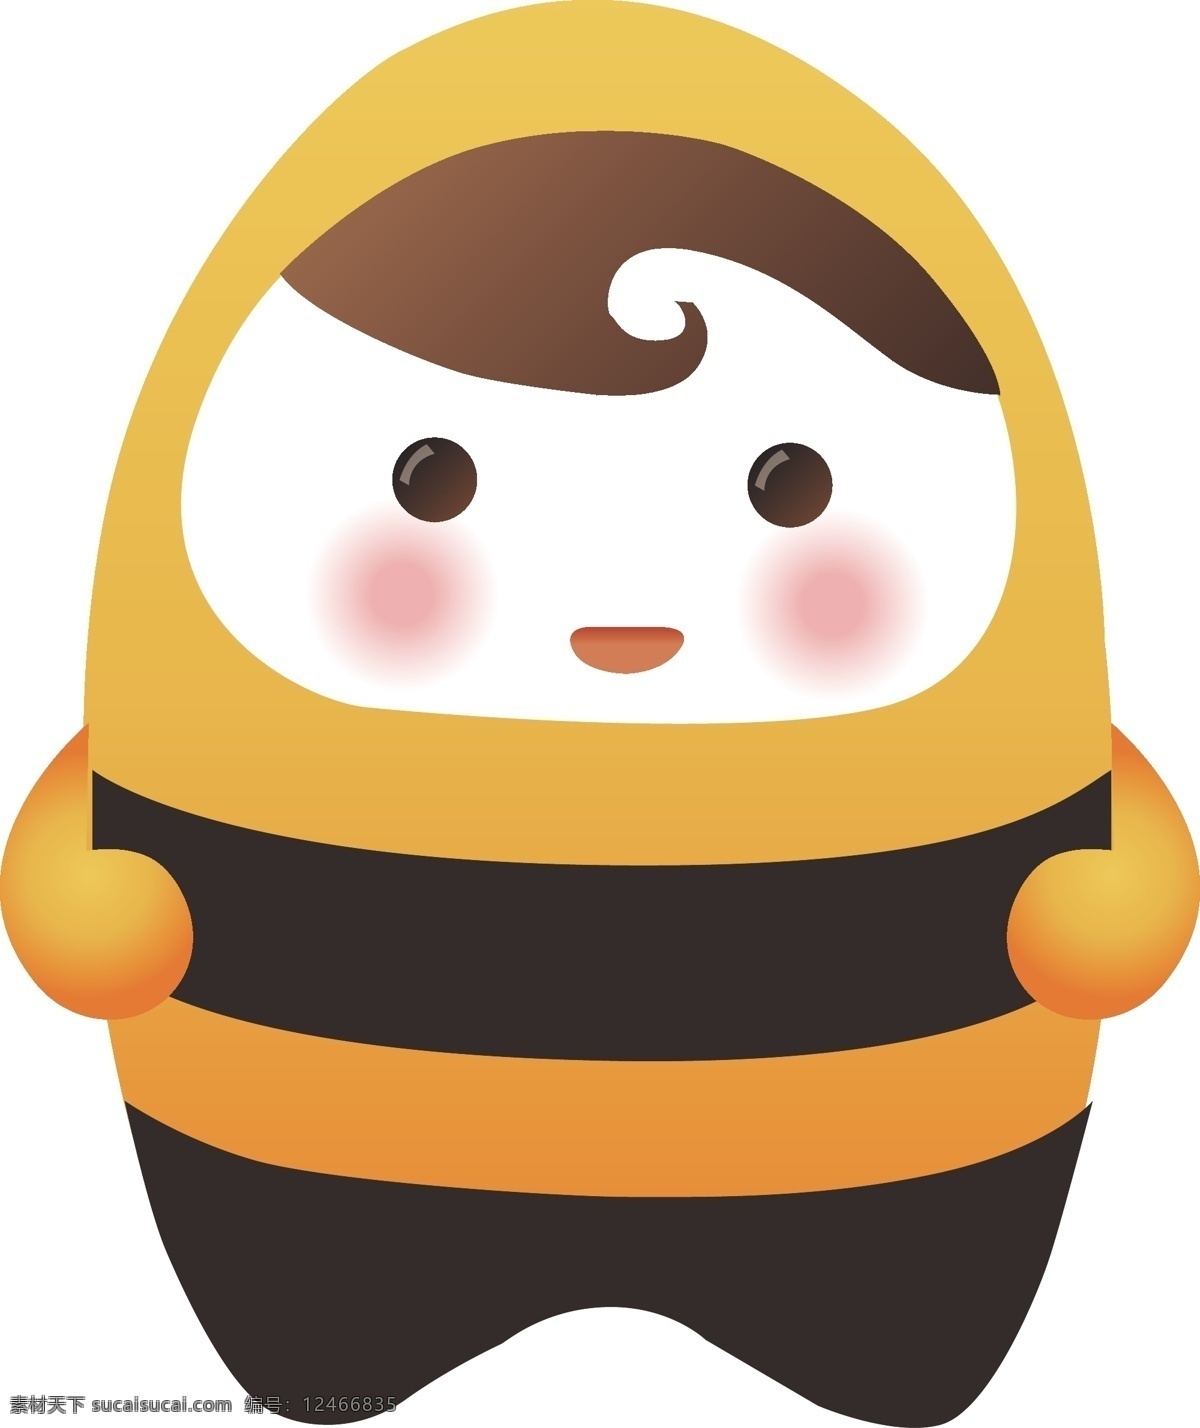 ui 宝宝 动画 粉红 黑色 可爱 蜜蜂 其他人物 矢量人物 矢量 模板下载 可爱的ui 蜜蜂黄 棕色